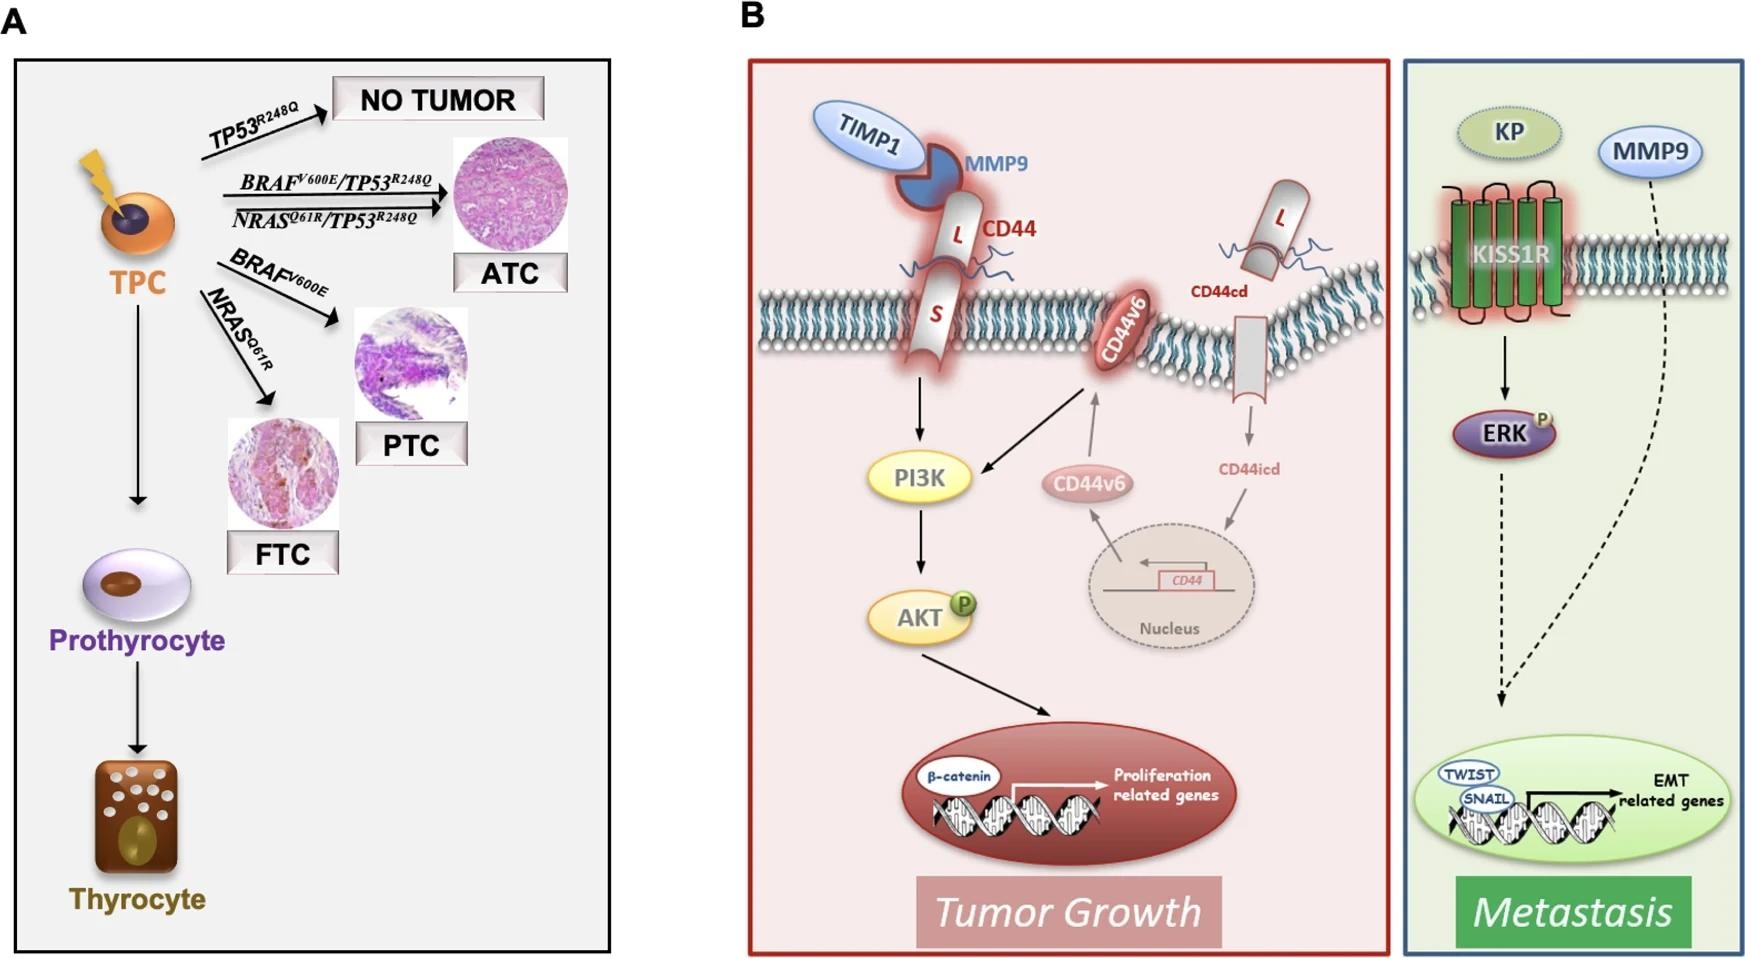 Схематическая модель, показывающая, что наиболее распространенные генетические изменения TC (BRAFV600E, NRASQ61R, BRAFV600E/TP53R248Q и NRASQ61R/TP53R248Q) в клетках-предшественниках щитовидной железы (TPC) повторяют различные гистотипы TC (FTC, PTC и ATC).  Следует отметить, что TP53R248Q сам по себе не требуется для инициации TC.  B Модель тройных комплексов (TIMP1/MMP9/CD44) и путей, управляемых KISS1R, в модифицированных TPC D22.  Образование комплексов TIMP1 и про-MMP9 активирует MMP9 и, следовательно, приводит к расщеплению CD44.  Внутрицитоплазматический домен CD44 (CD44icd) перемещается в ядро, где индуцирует транскрипцию CD44v6.  CD44v6 способствует пролиферации TPC через путь PI3K/AKT.  Связывание кисспептинов (KPs) с KISS1R активирует ERK и взаимодействует с MMP9, чтобы способствовать транскрипции генов, связанных с EMT, включая TWIST и SNAIL, что приводит к метастатическому приживлению трансплантата.